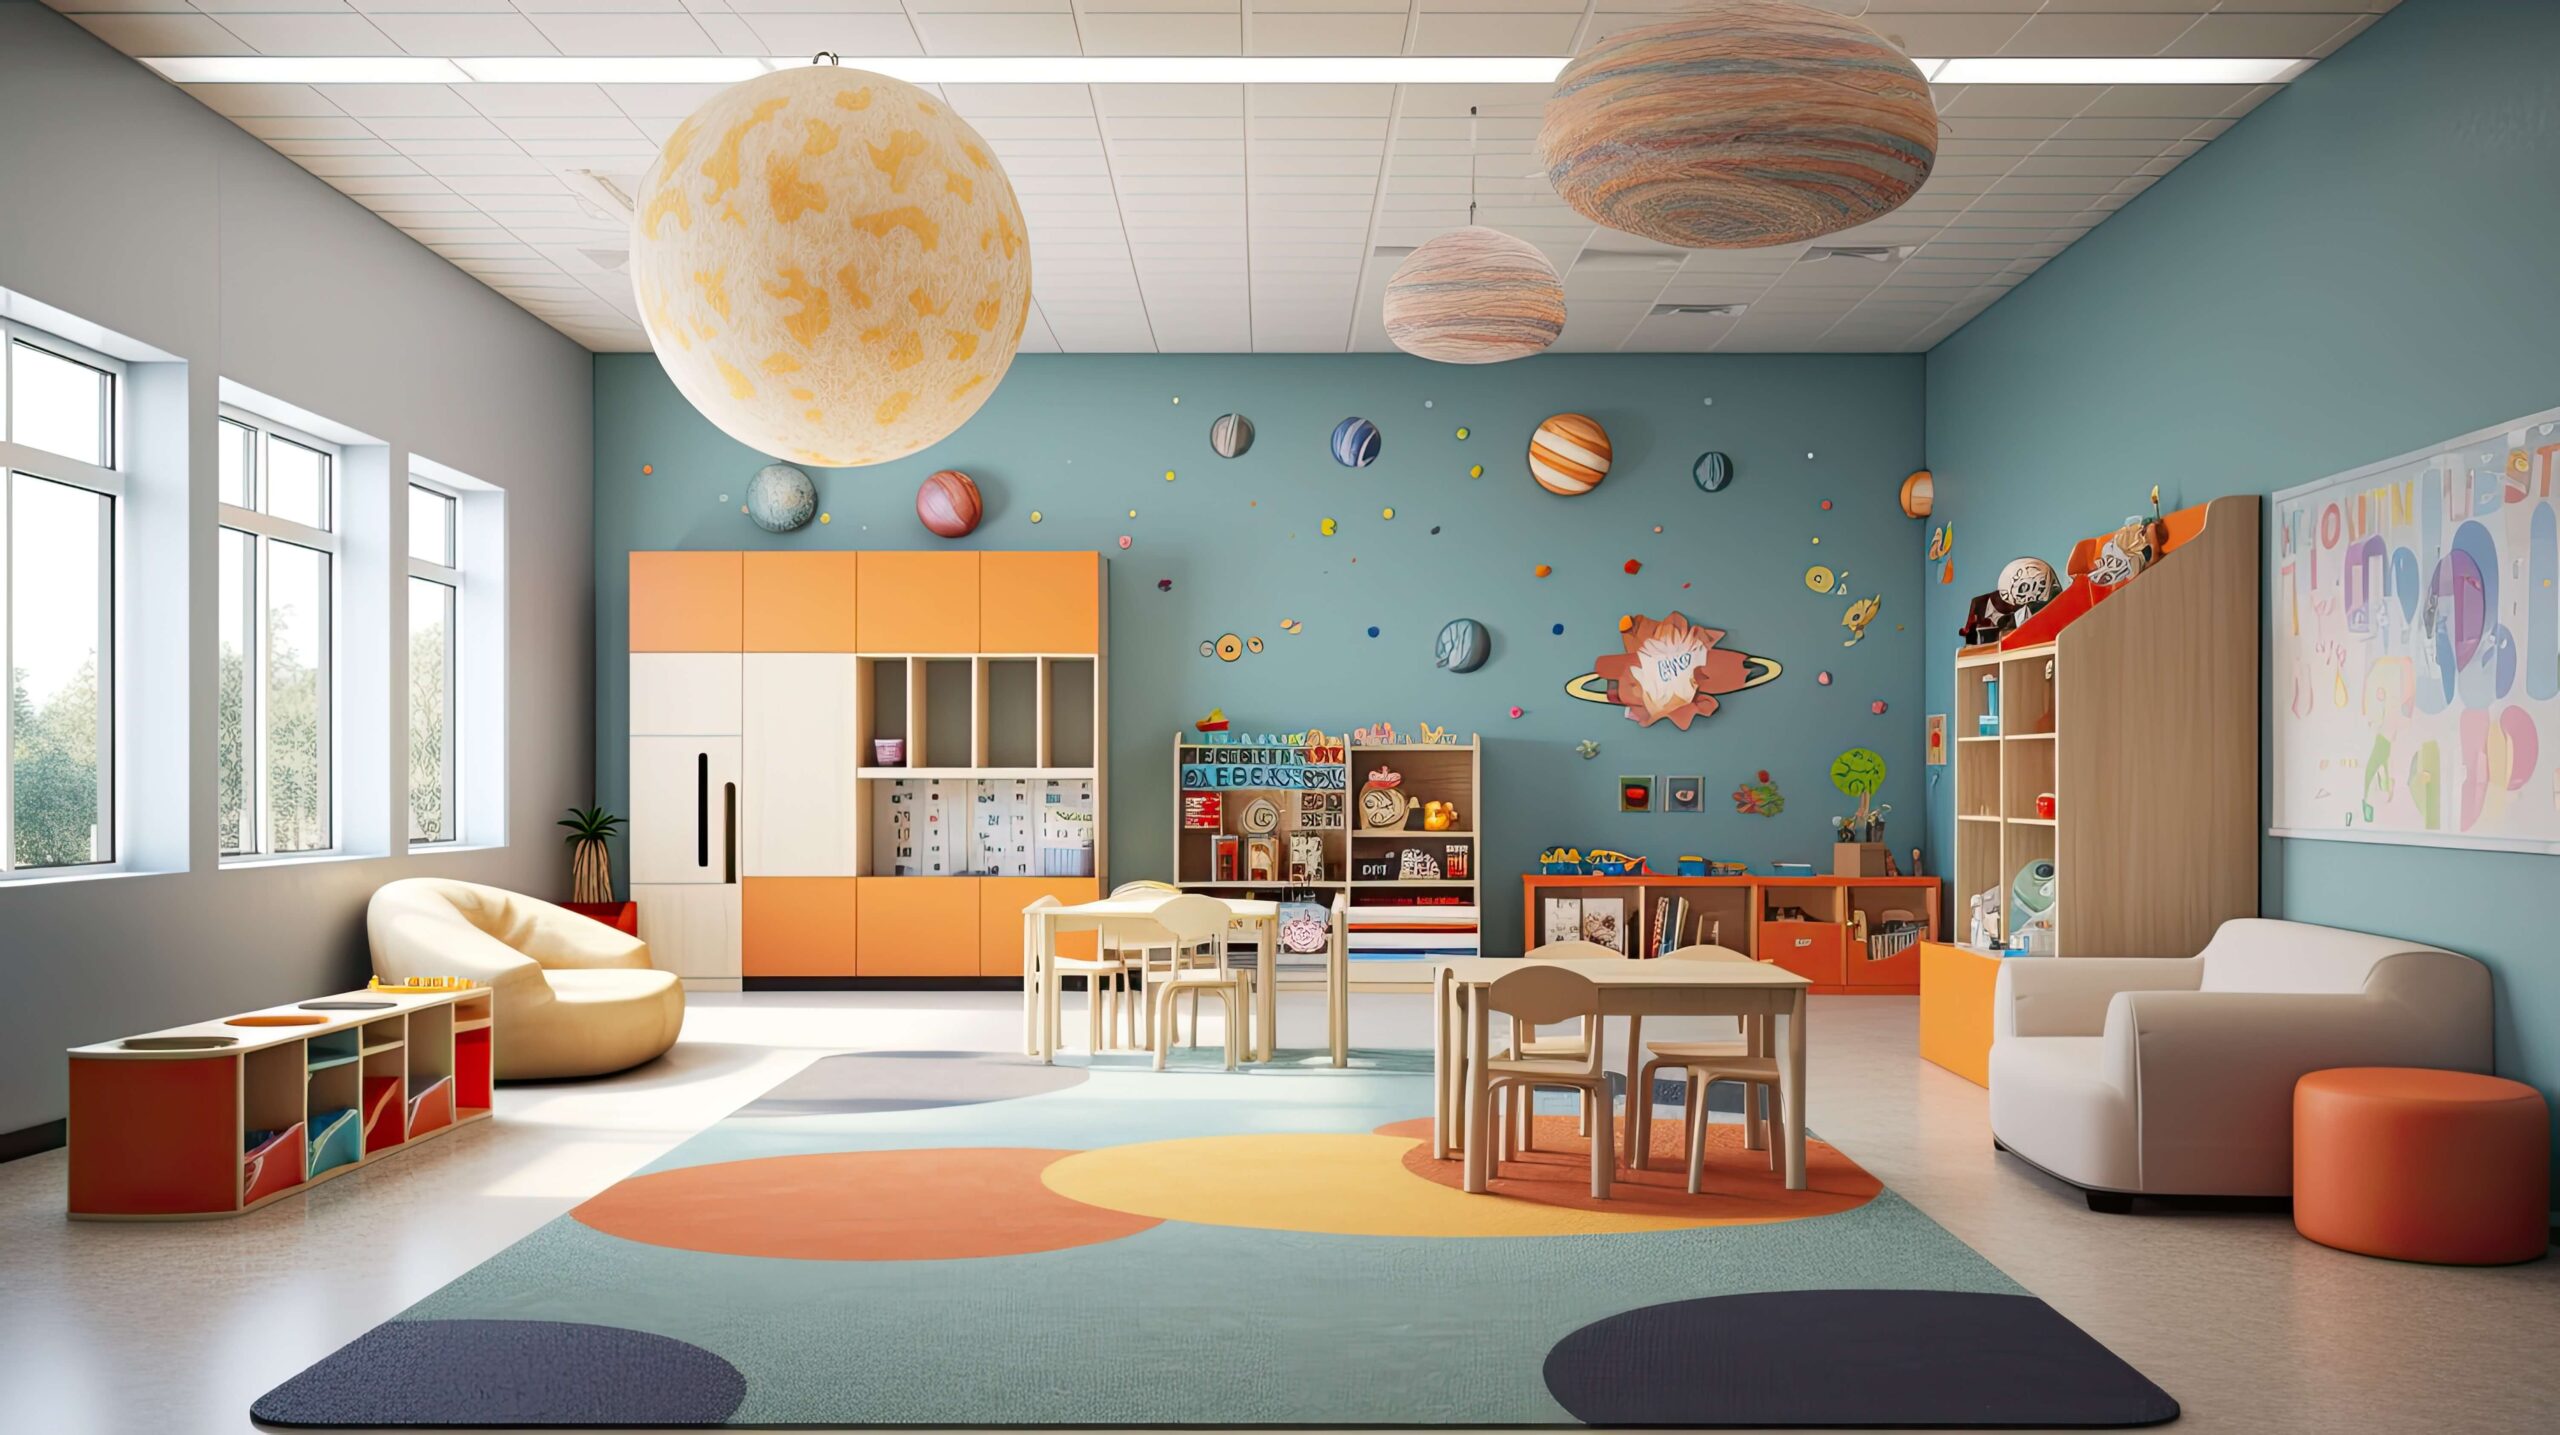 Children's room organization